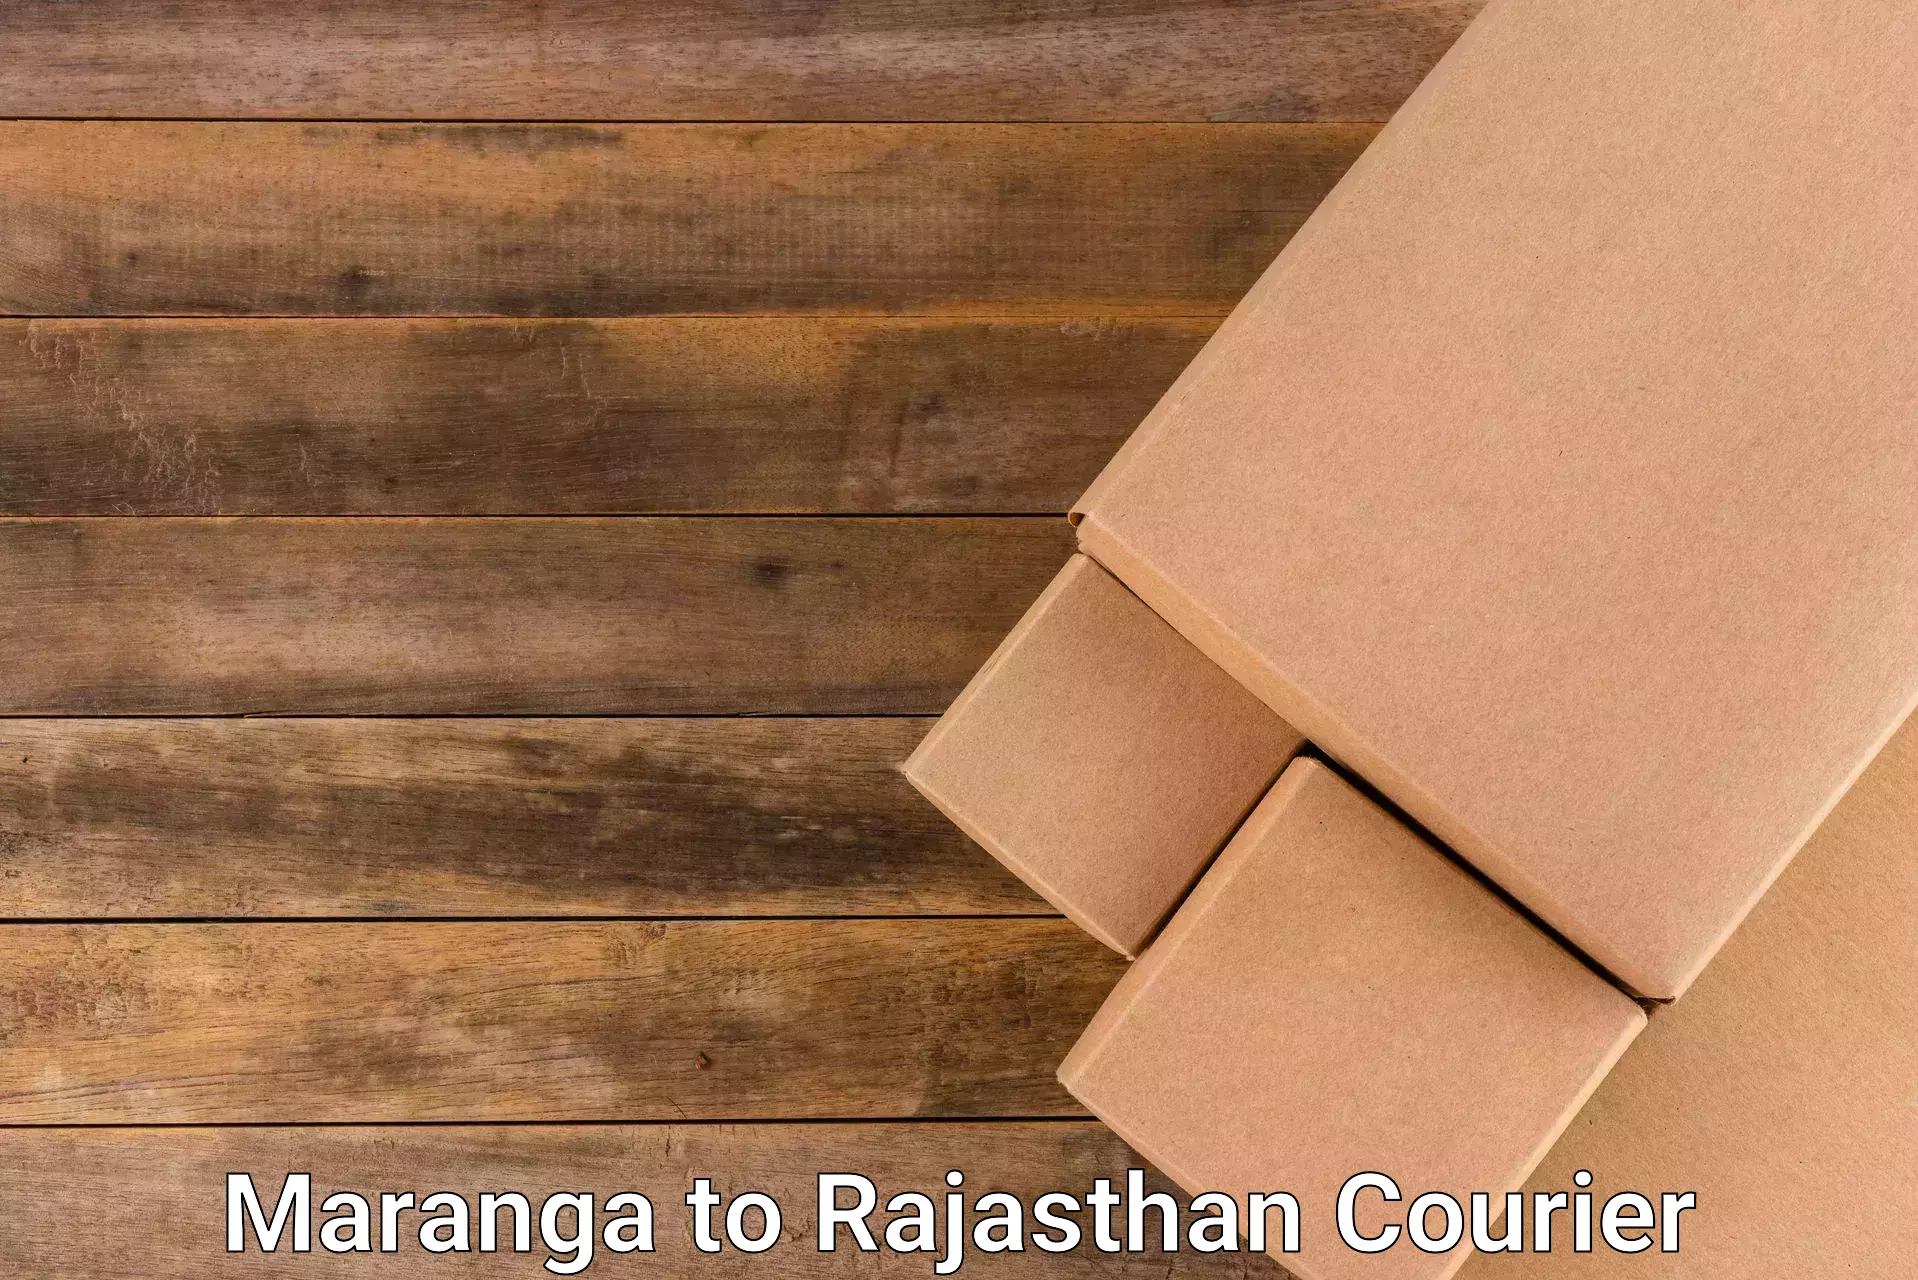 Fragile item shipping in Maranga to Tijara